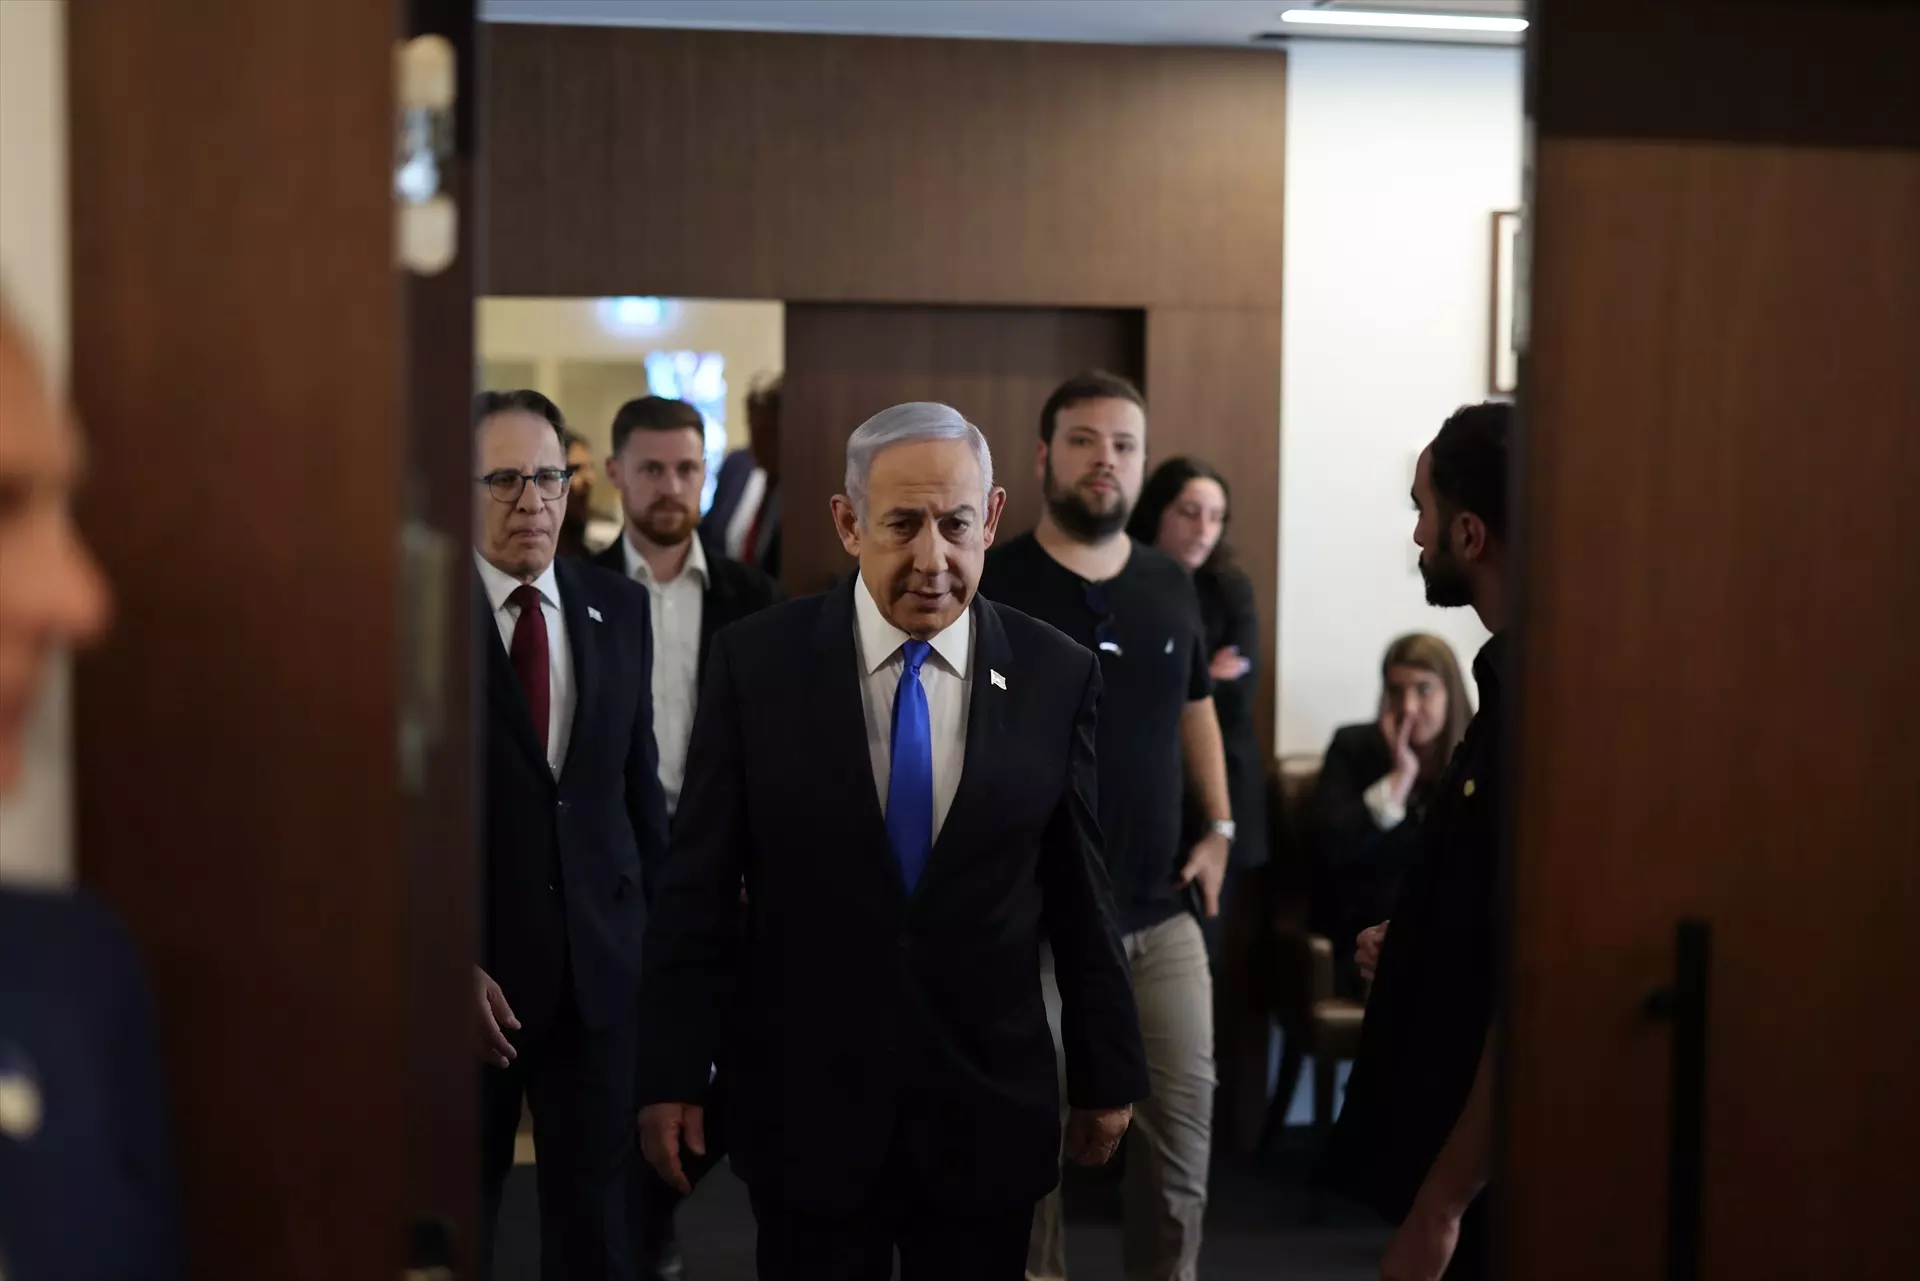 Benjamin Netanyahu, primer ministro de Israel, en una reciente imagen de archivo. — Ilia Yefimovich / DPA | EUROPA PRESS